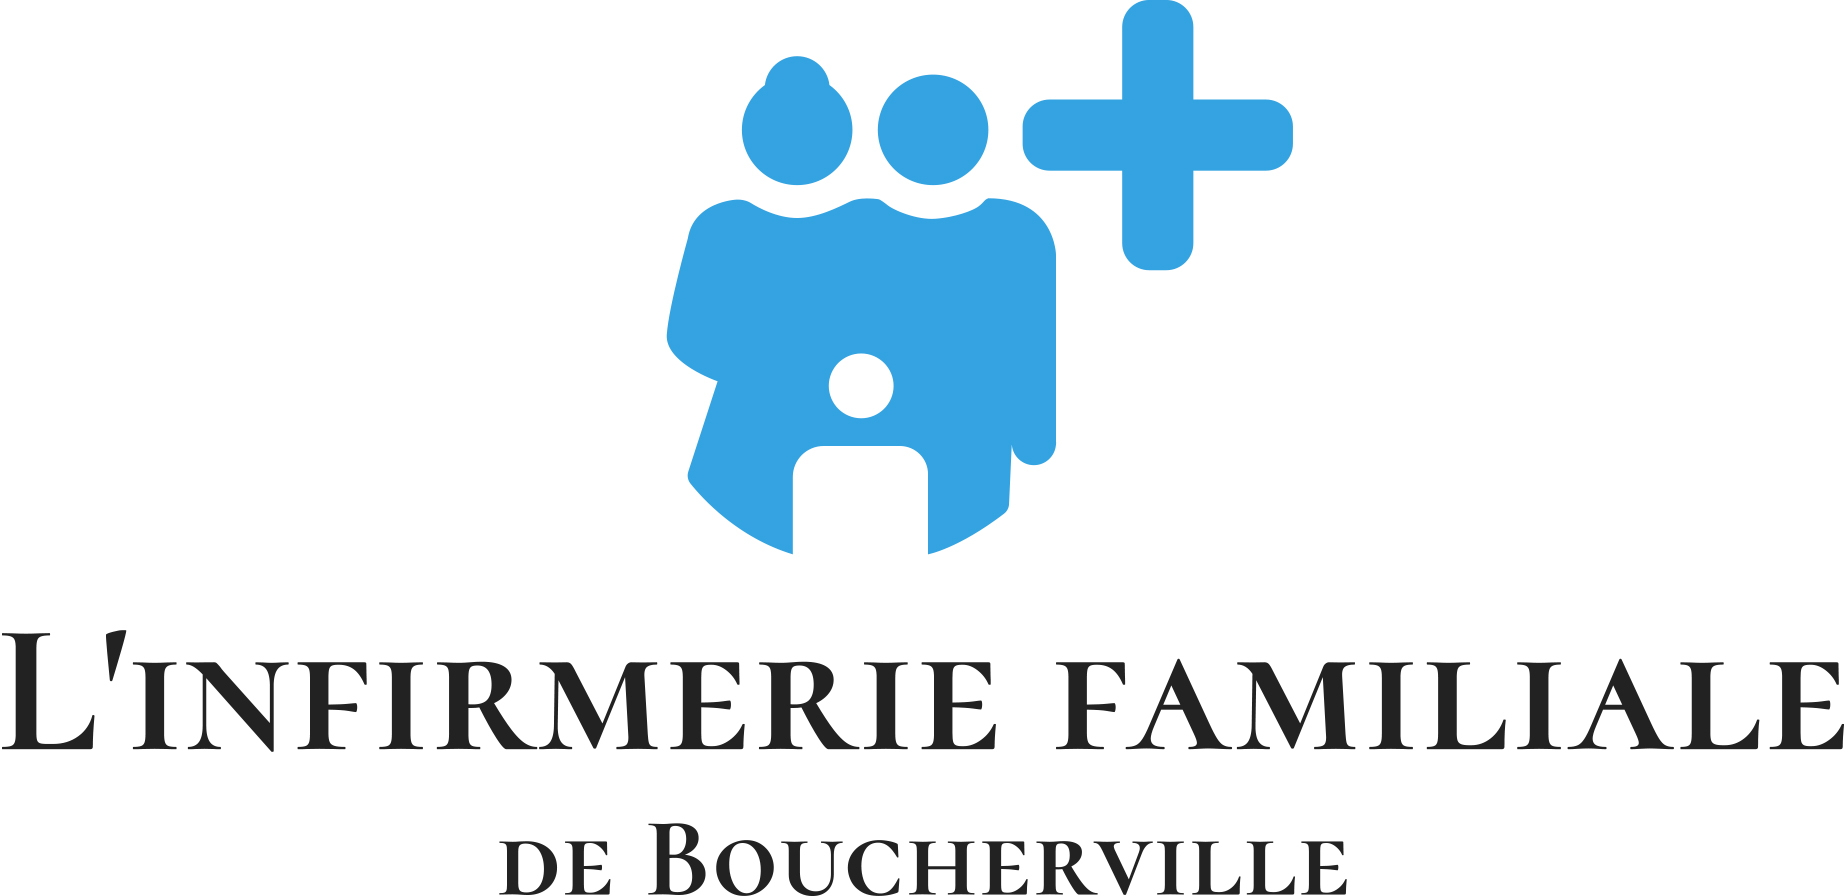 L’infirmerie familiale de Boucherville Inc.